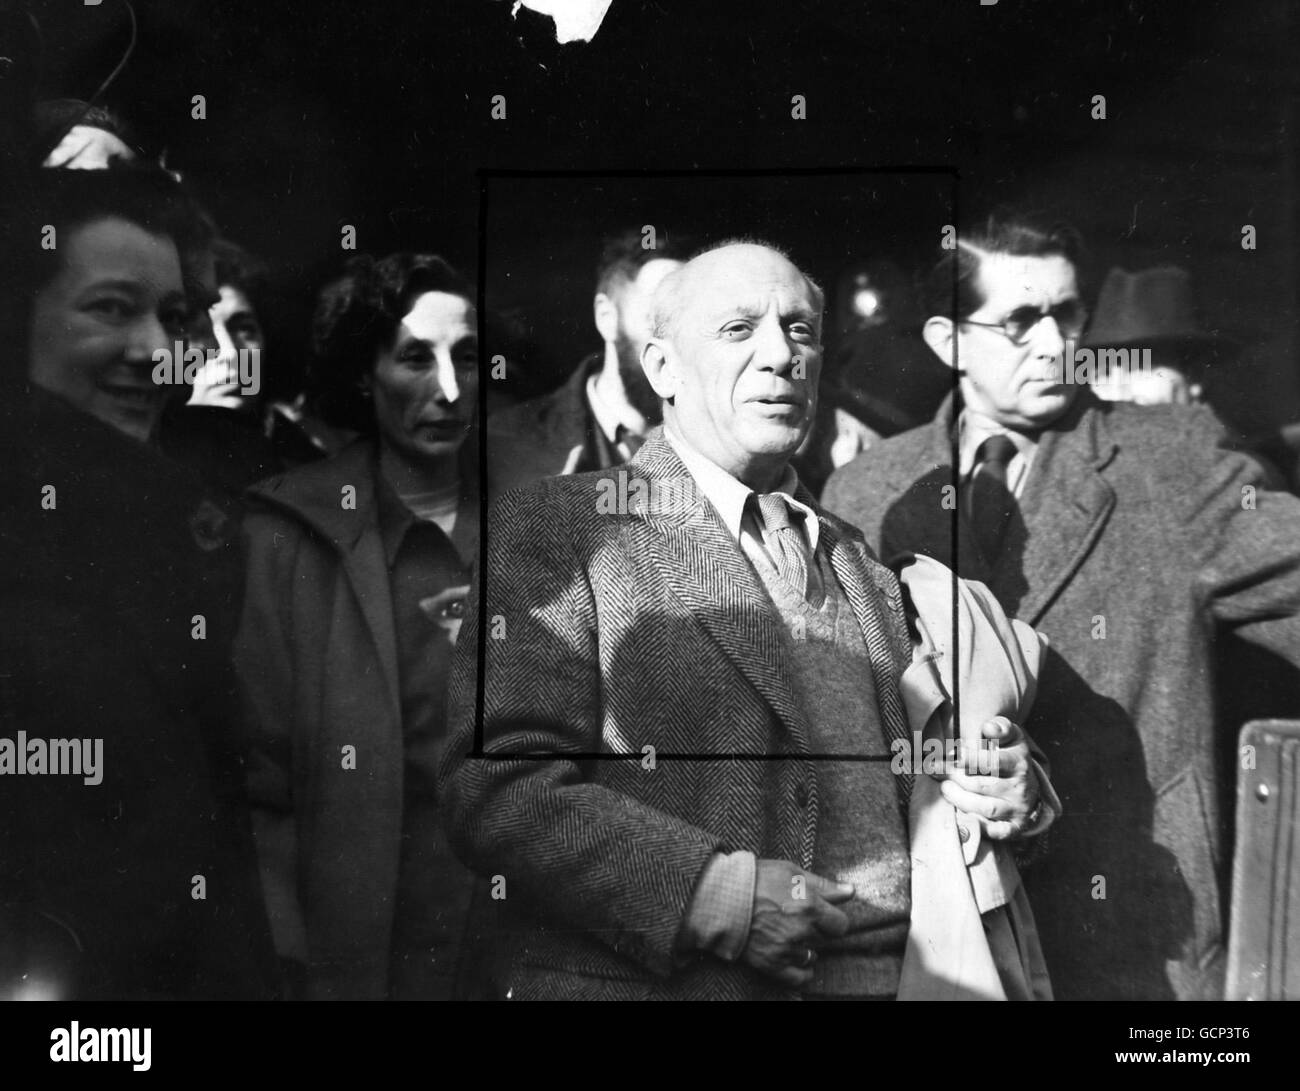 Pablo Picasso, artista e pioniere spagnolo della scuola di Picasso, arriva alla Victoria Station di Londra l'11 novembre 1950 da Parigi in viaggio per Sheffield e la seconda parola Congresso della Pace Foto Stock